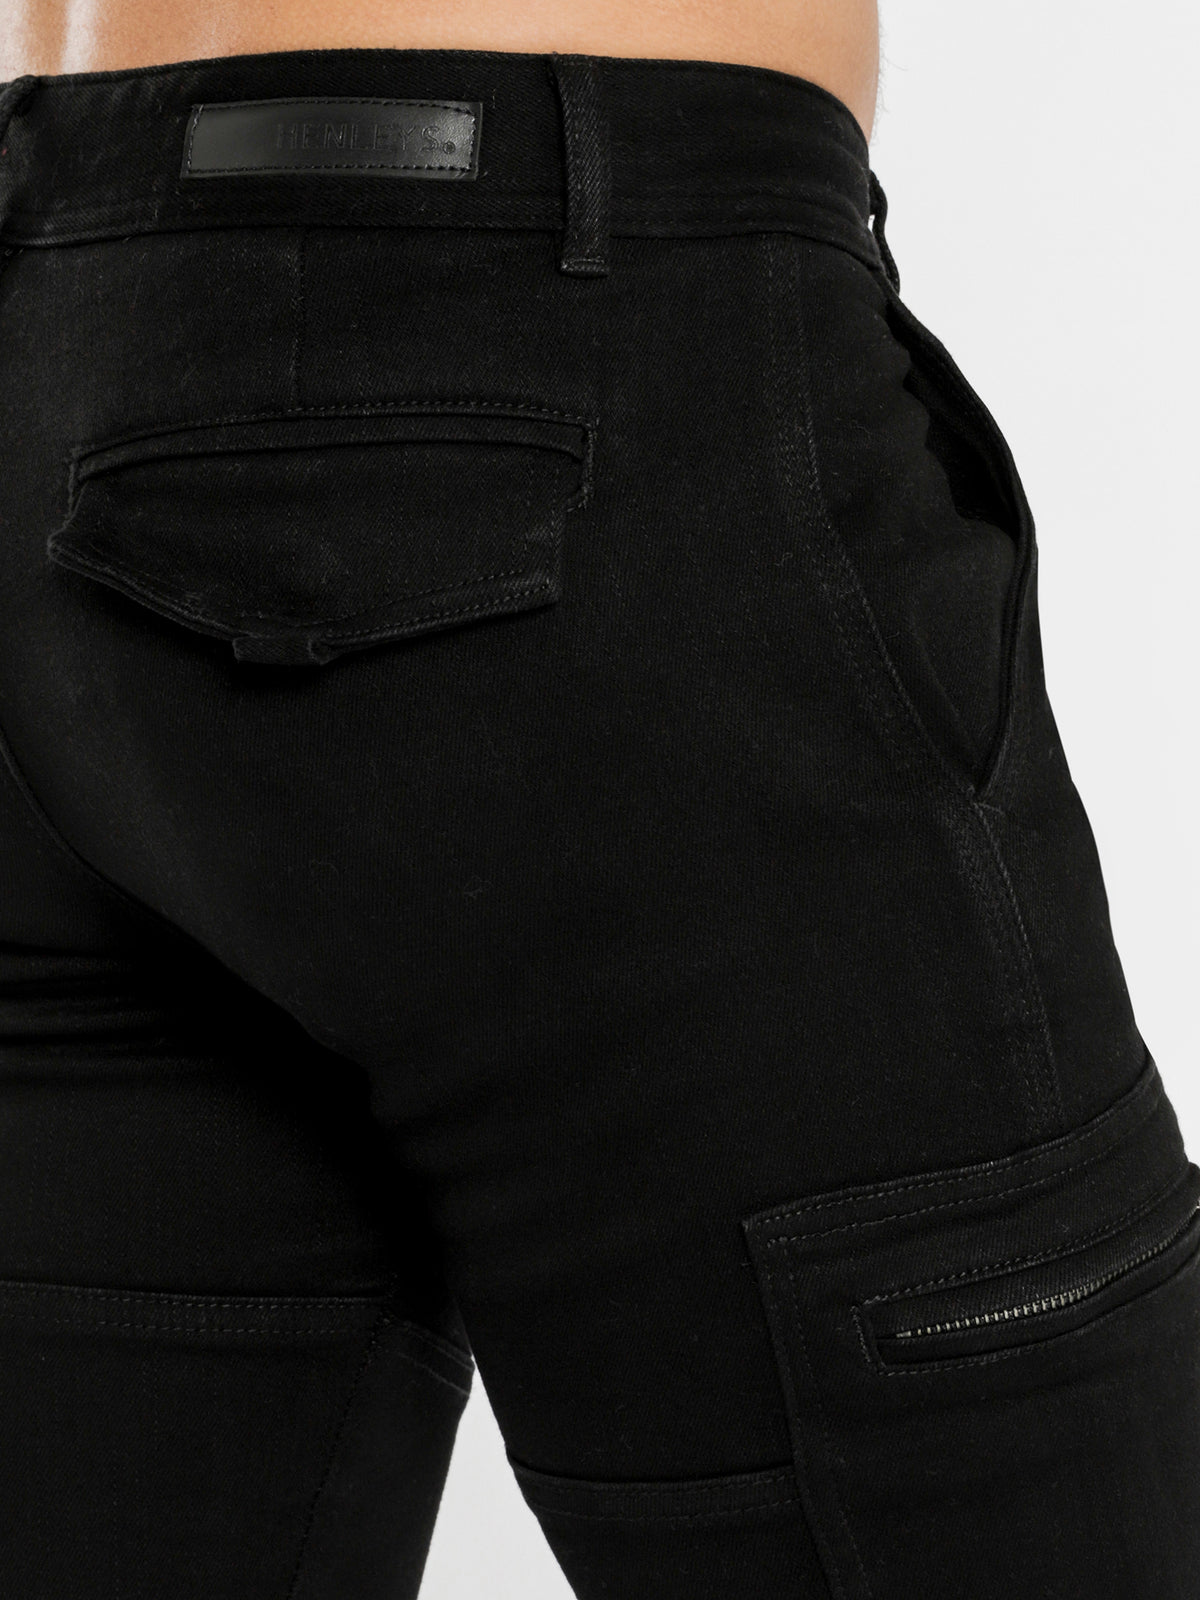 Leon Slim-Fit Cargo Pants in Black Denim